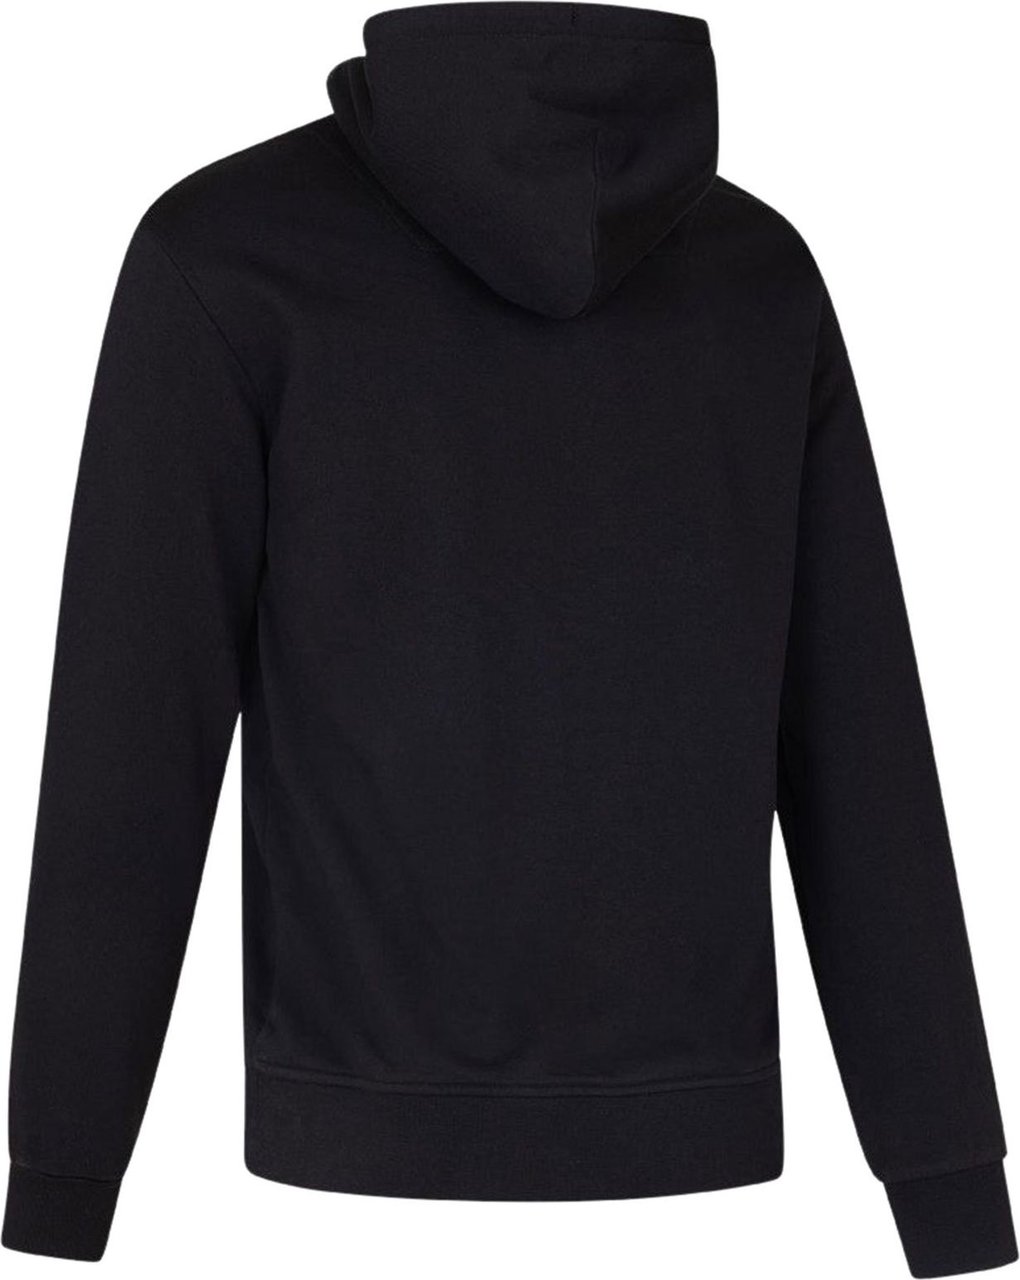 Cruyff Sweaters Zwart